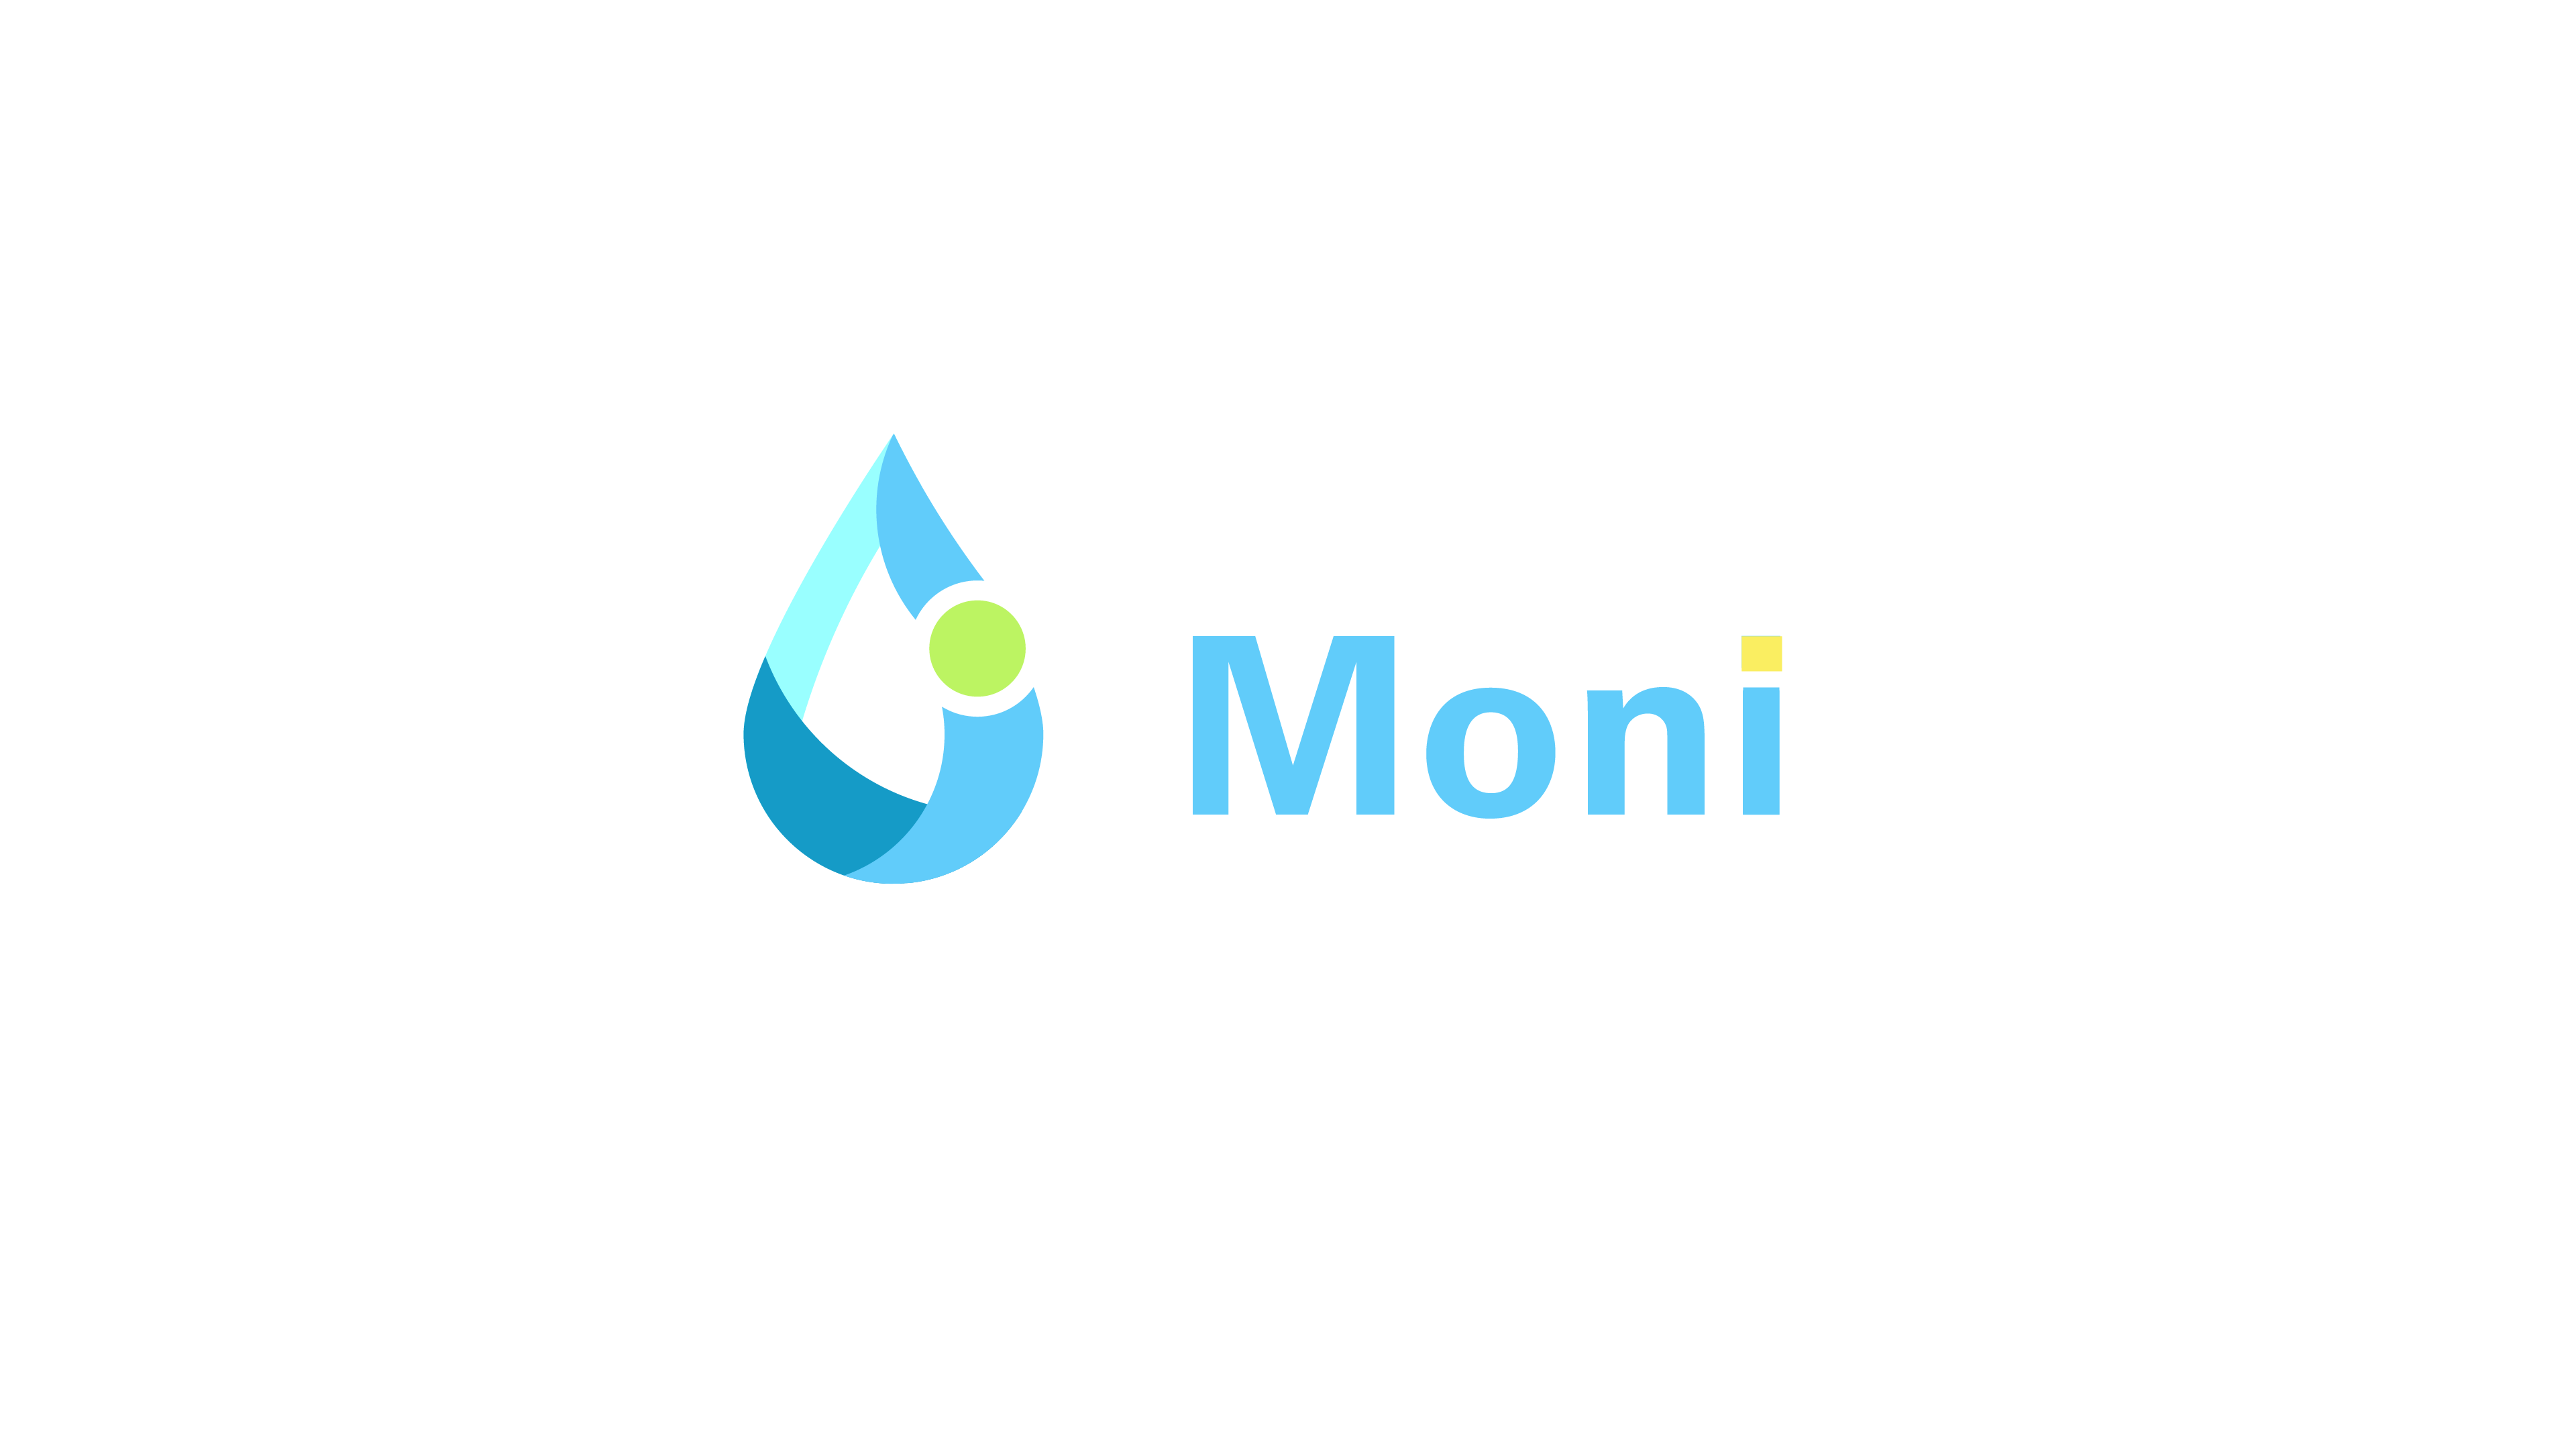 Moni Logo - Moni – YingshanWu Inspiration